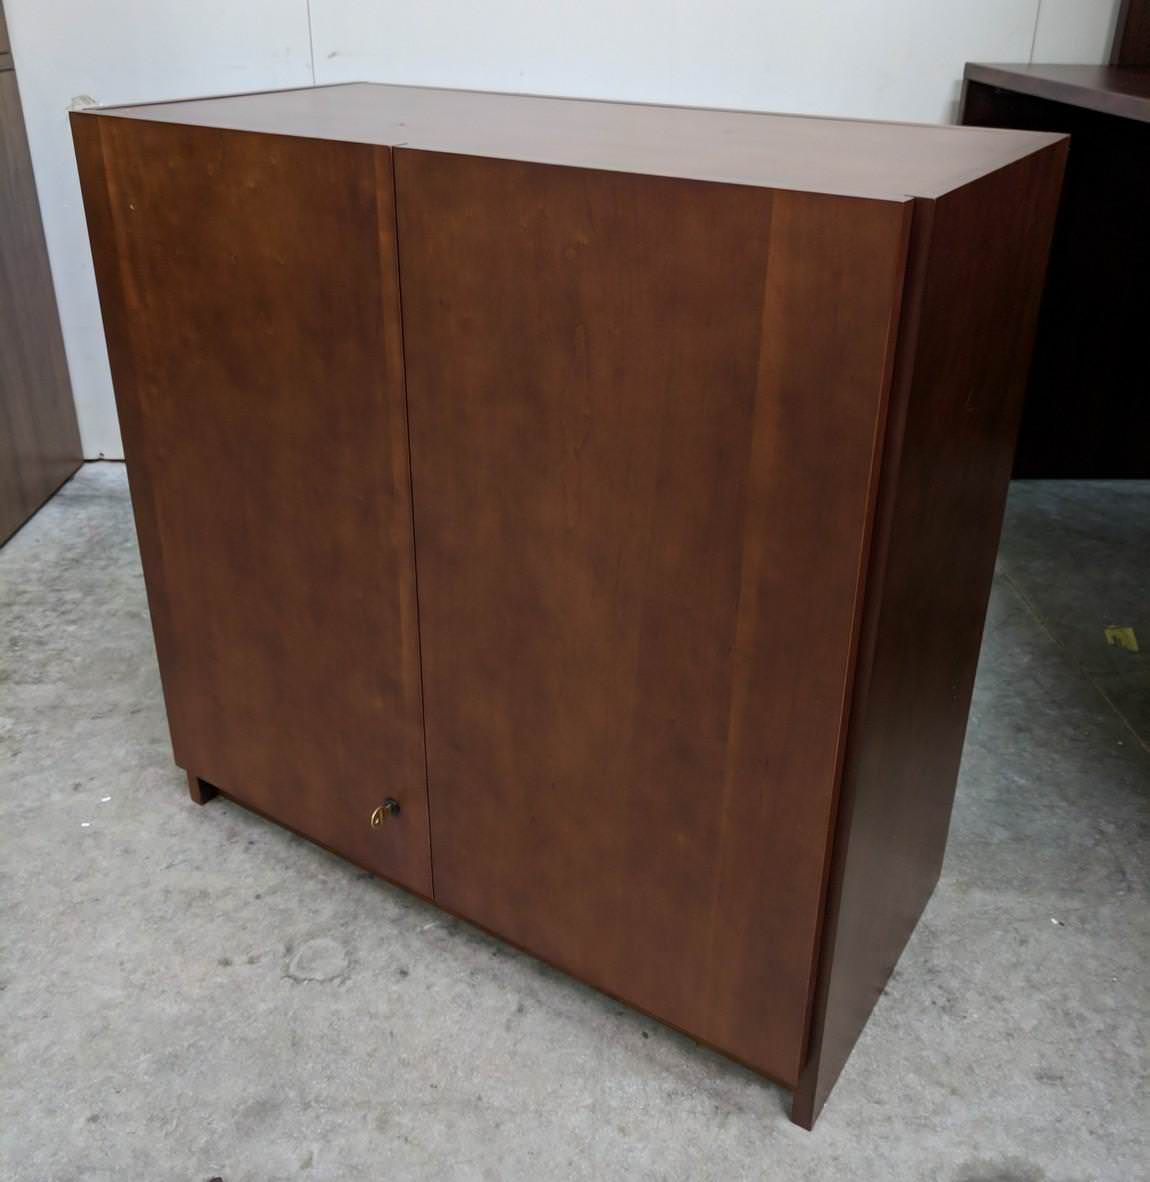 National Solid Wood Cherry 2 Door Storage Cabinet – 30 Inch Wide